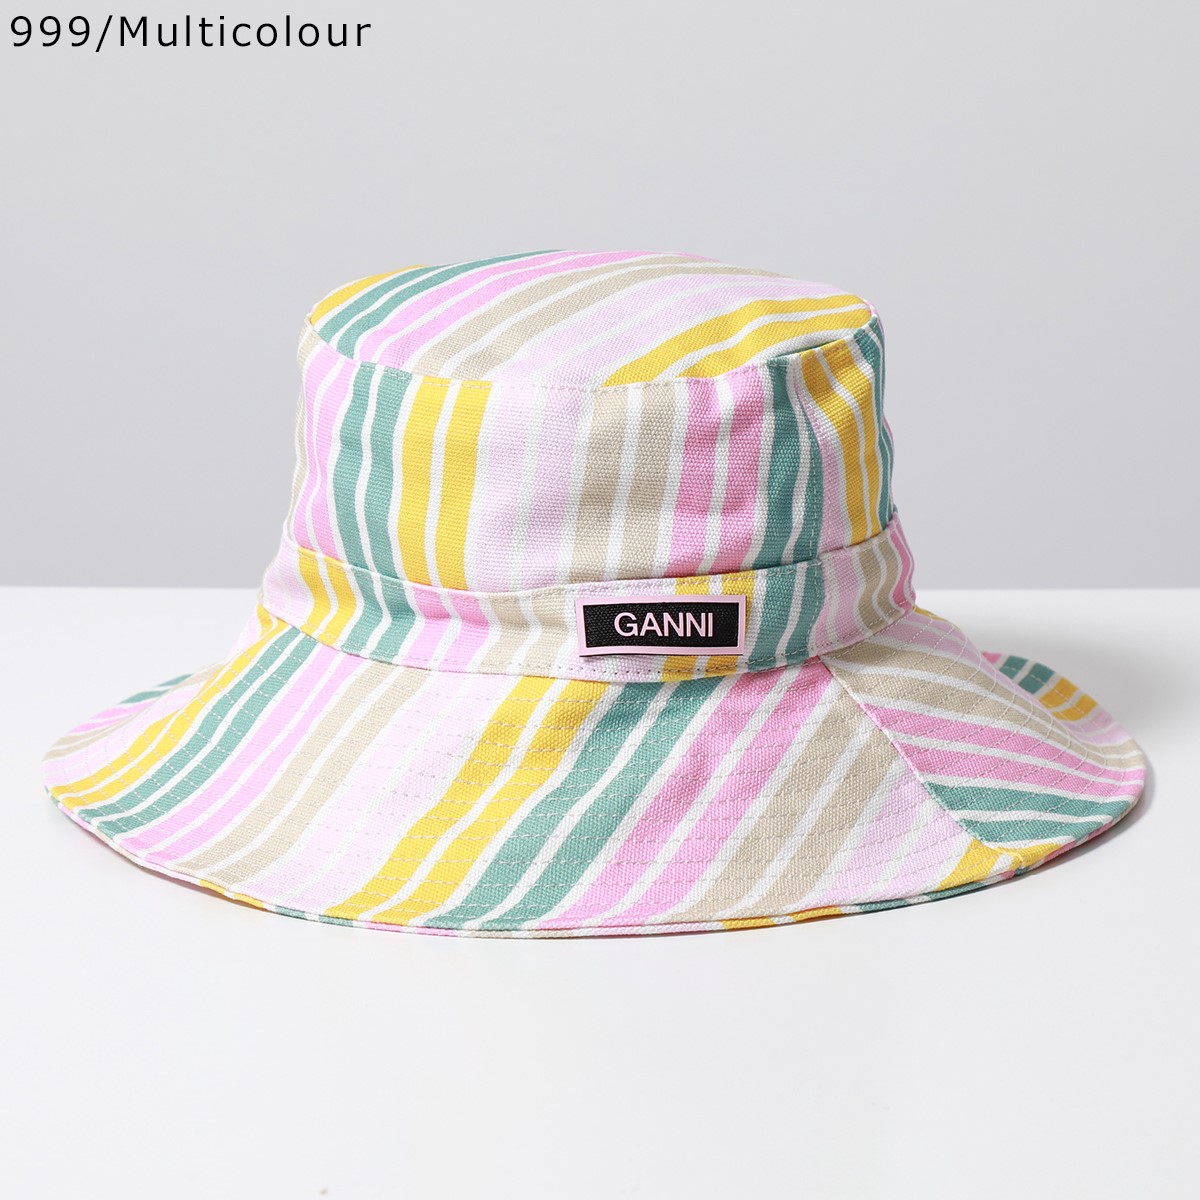 GANNI ガニー バケットハット Recyclled Tech Bucket Hat レディース ロゴ ワイドブリム つば広 帽子 カラー4色